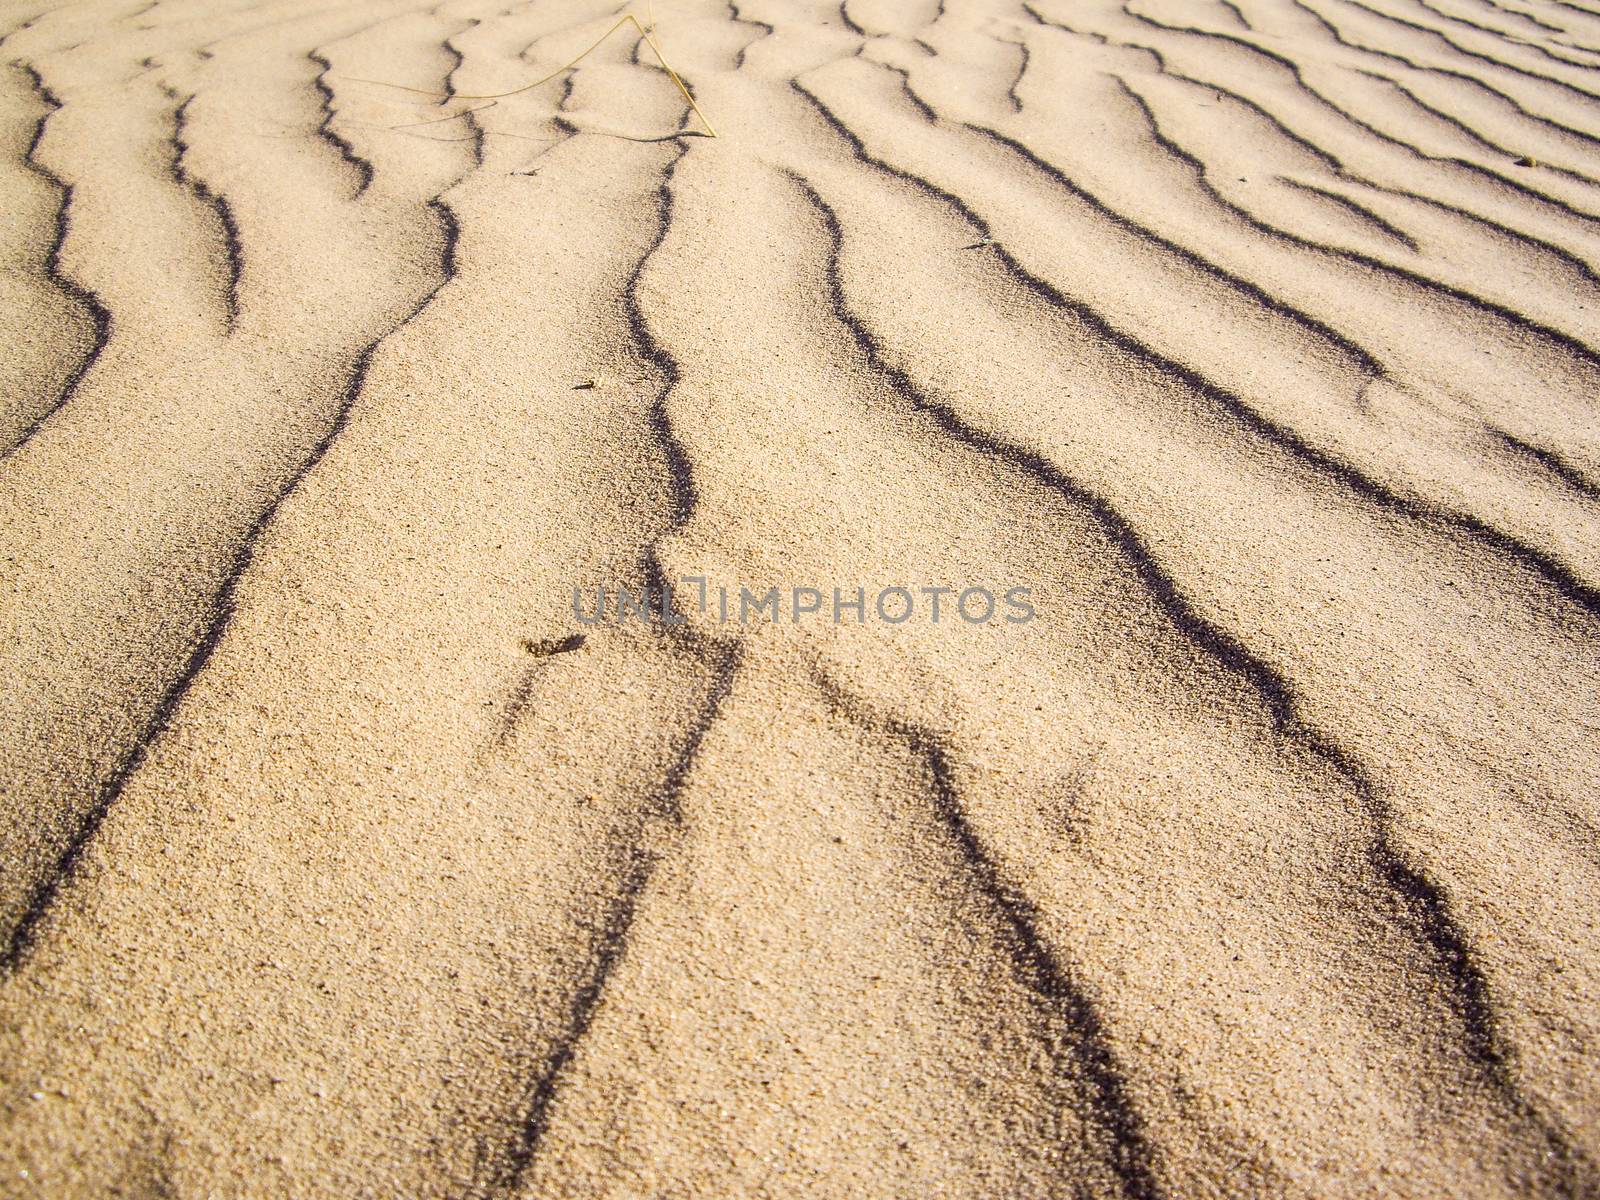 Baking sand in desert of Southwest USA